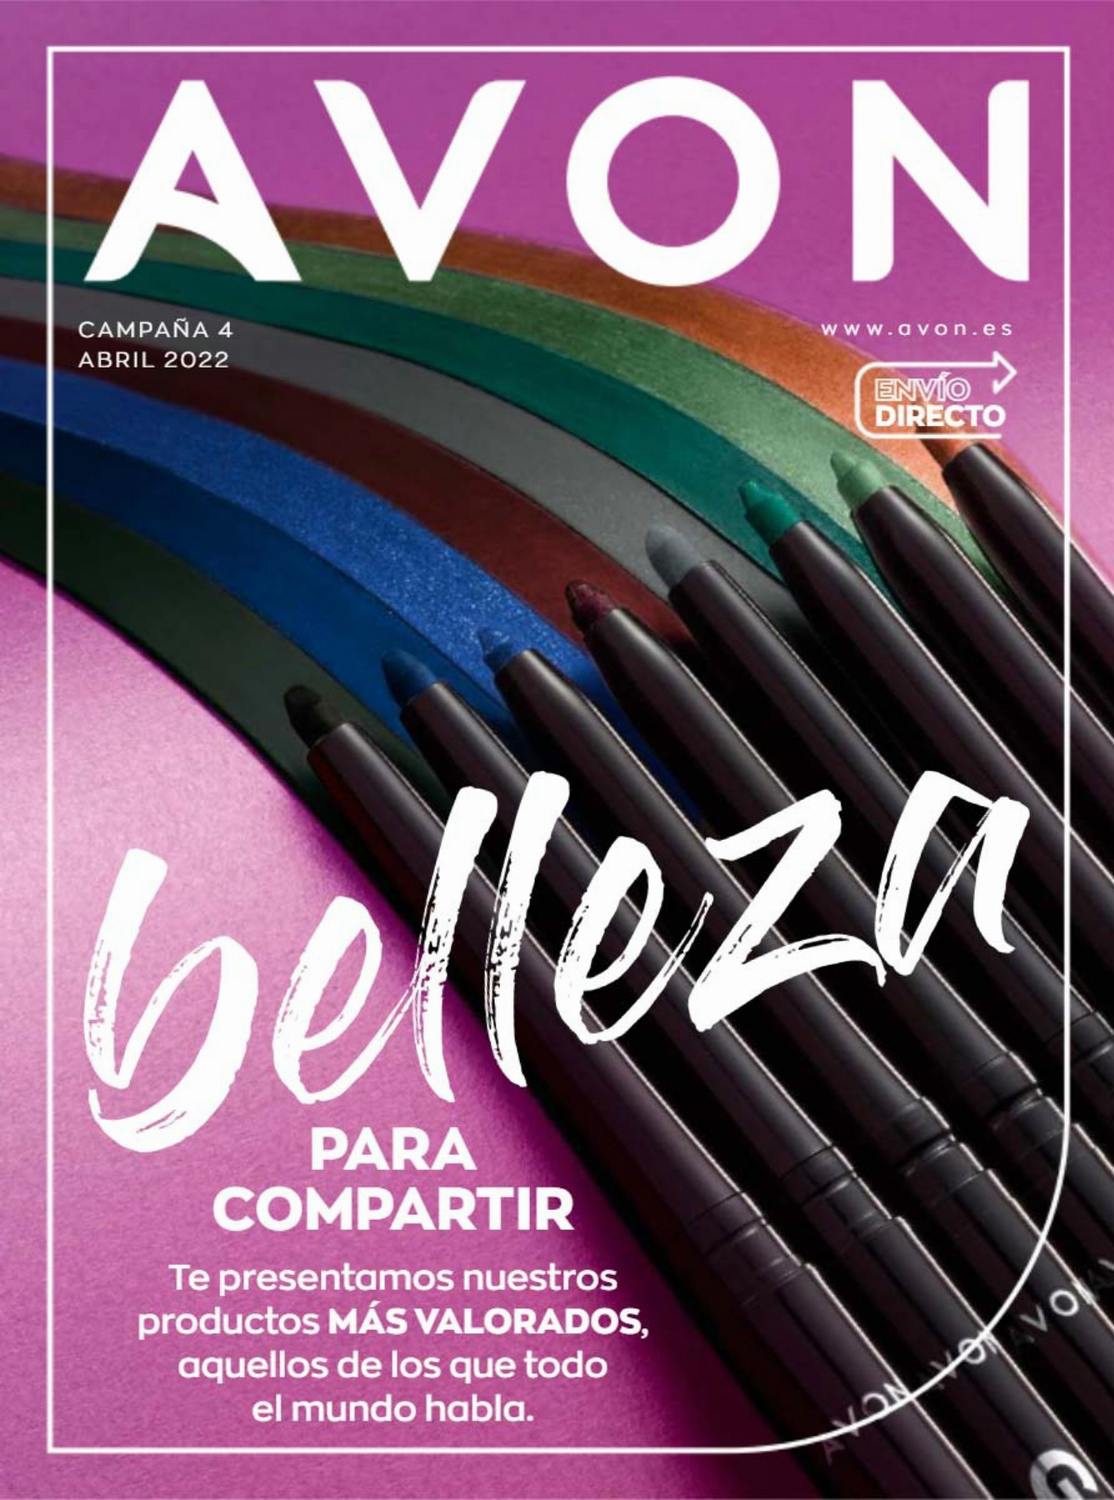 Avon Folleto Campaña 4 2022 España